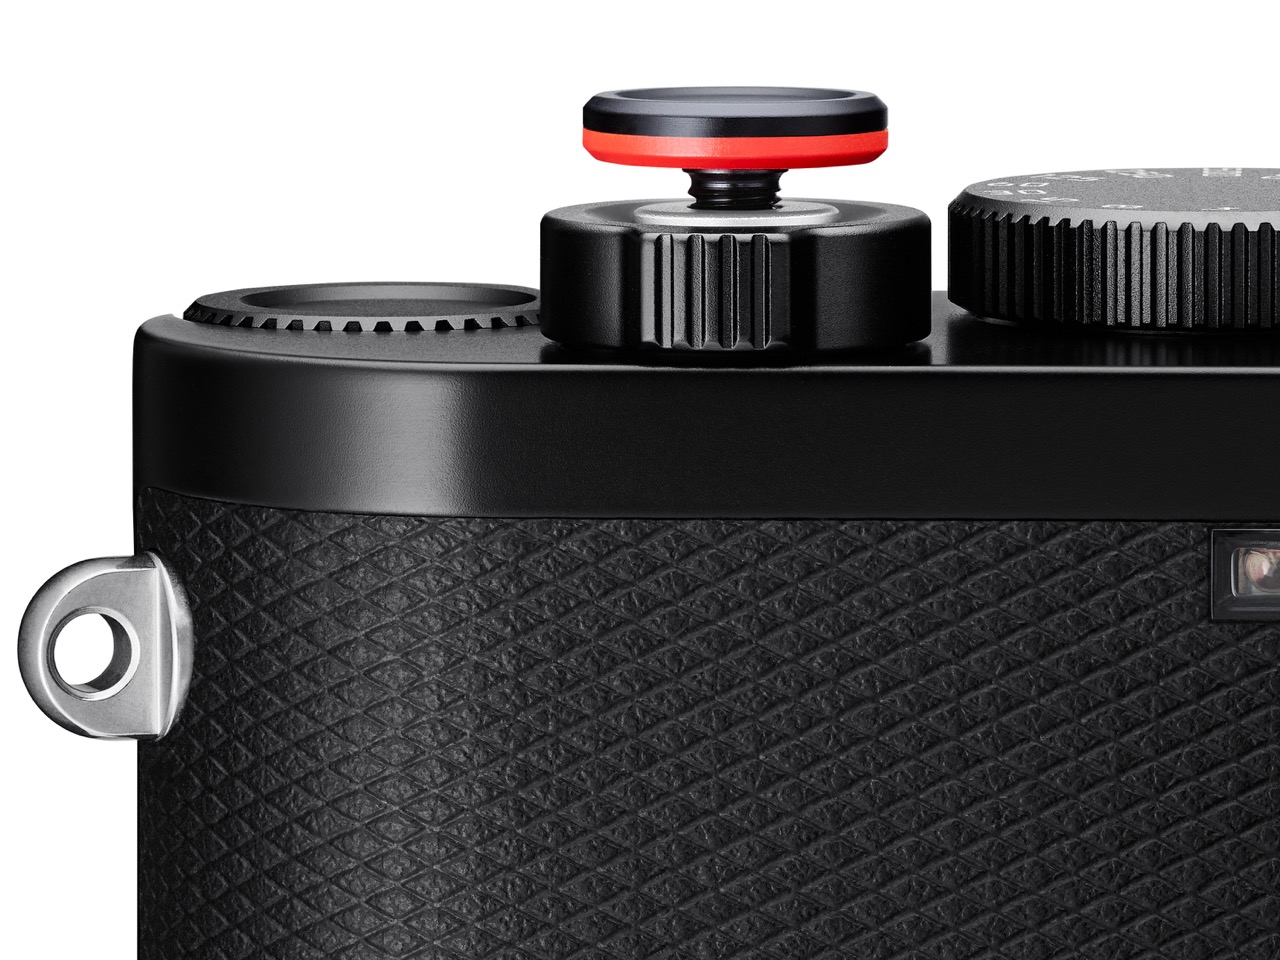 Leica Soft Release Button in Schwarz auf Kamera